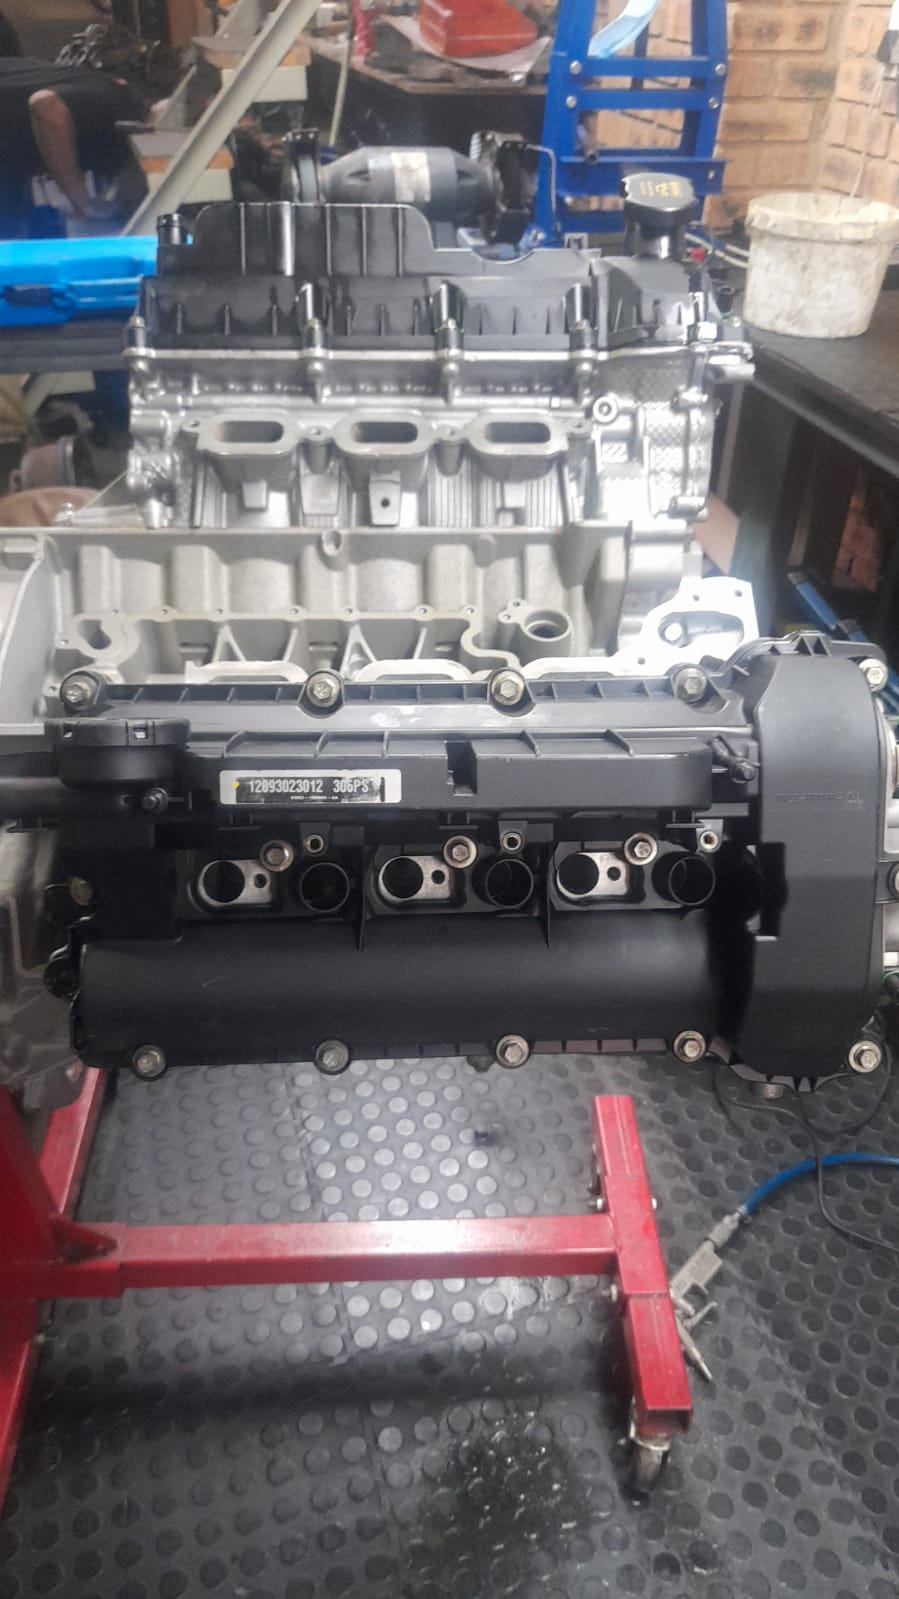 Land rover 3.0L tdv6 turbo diesel